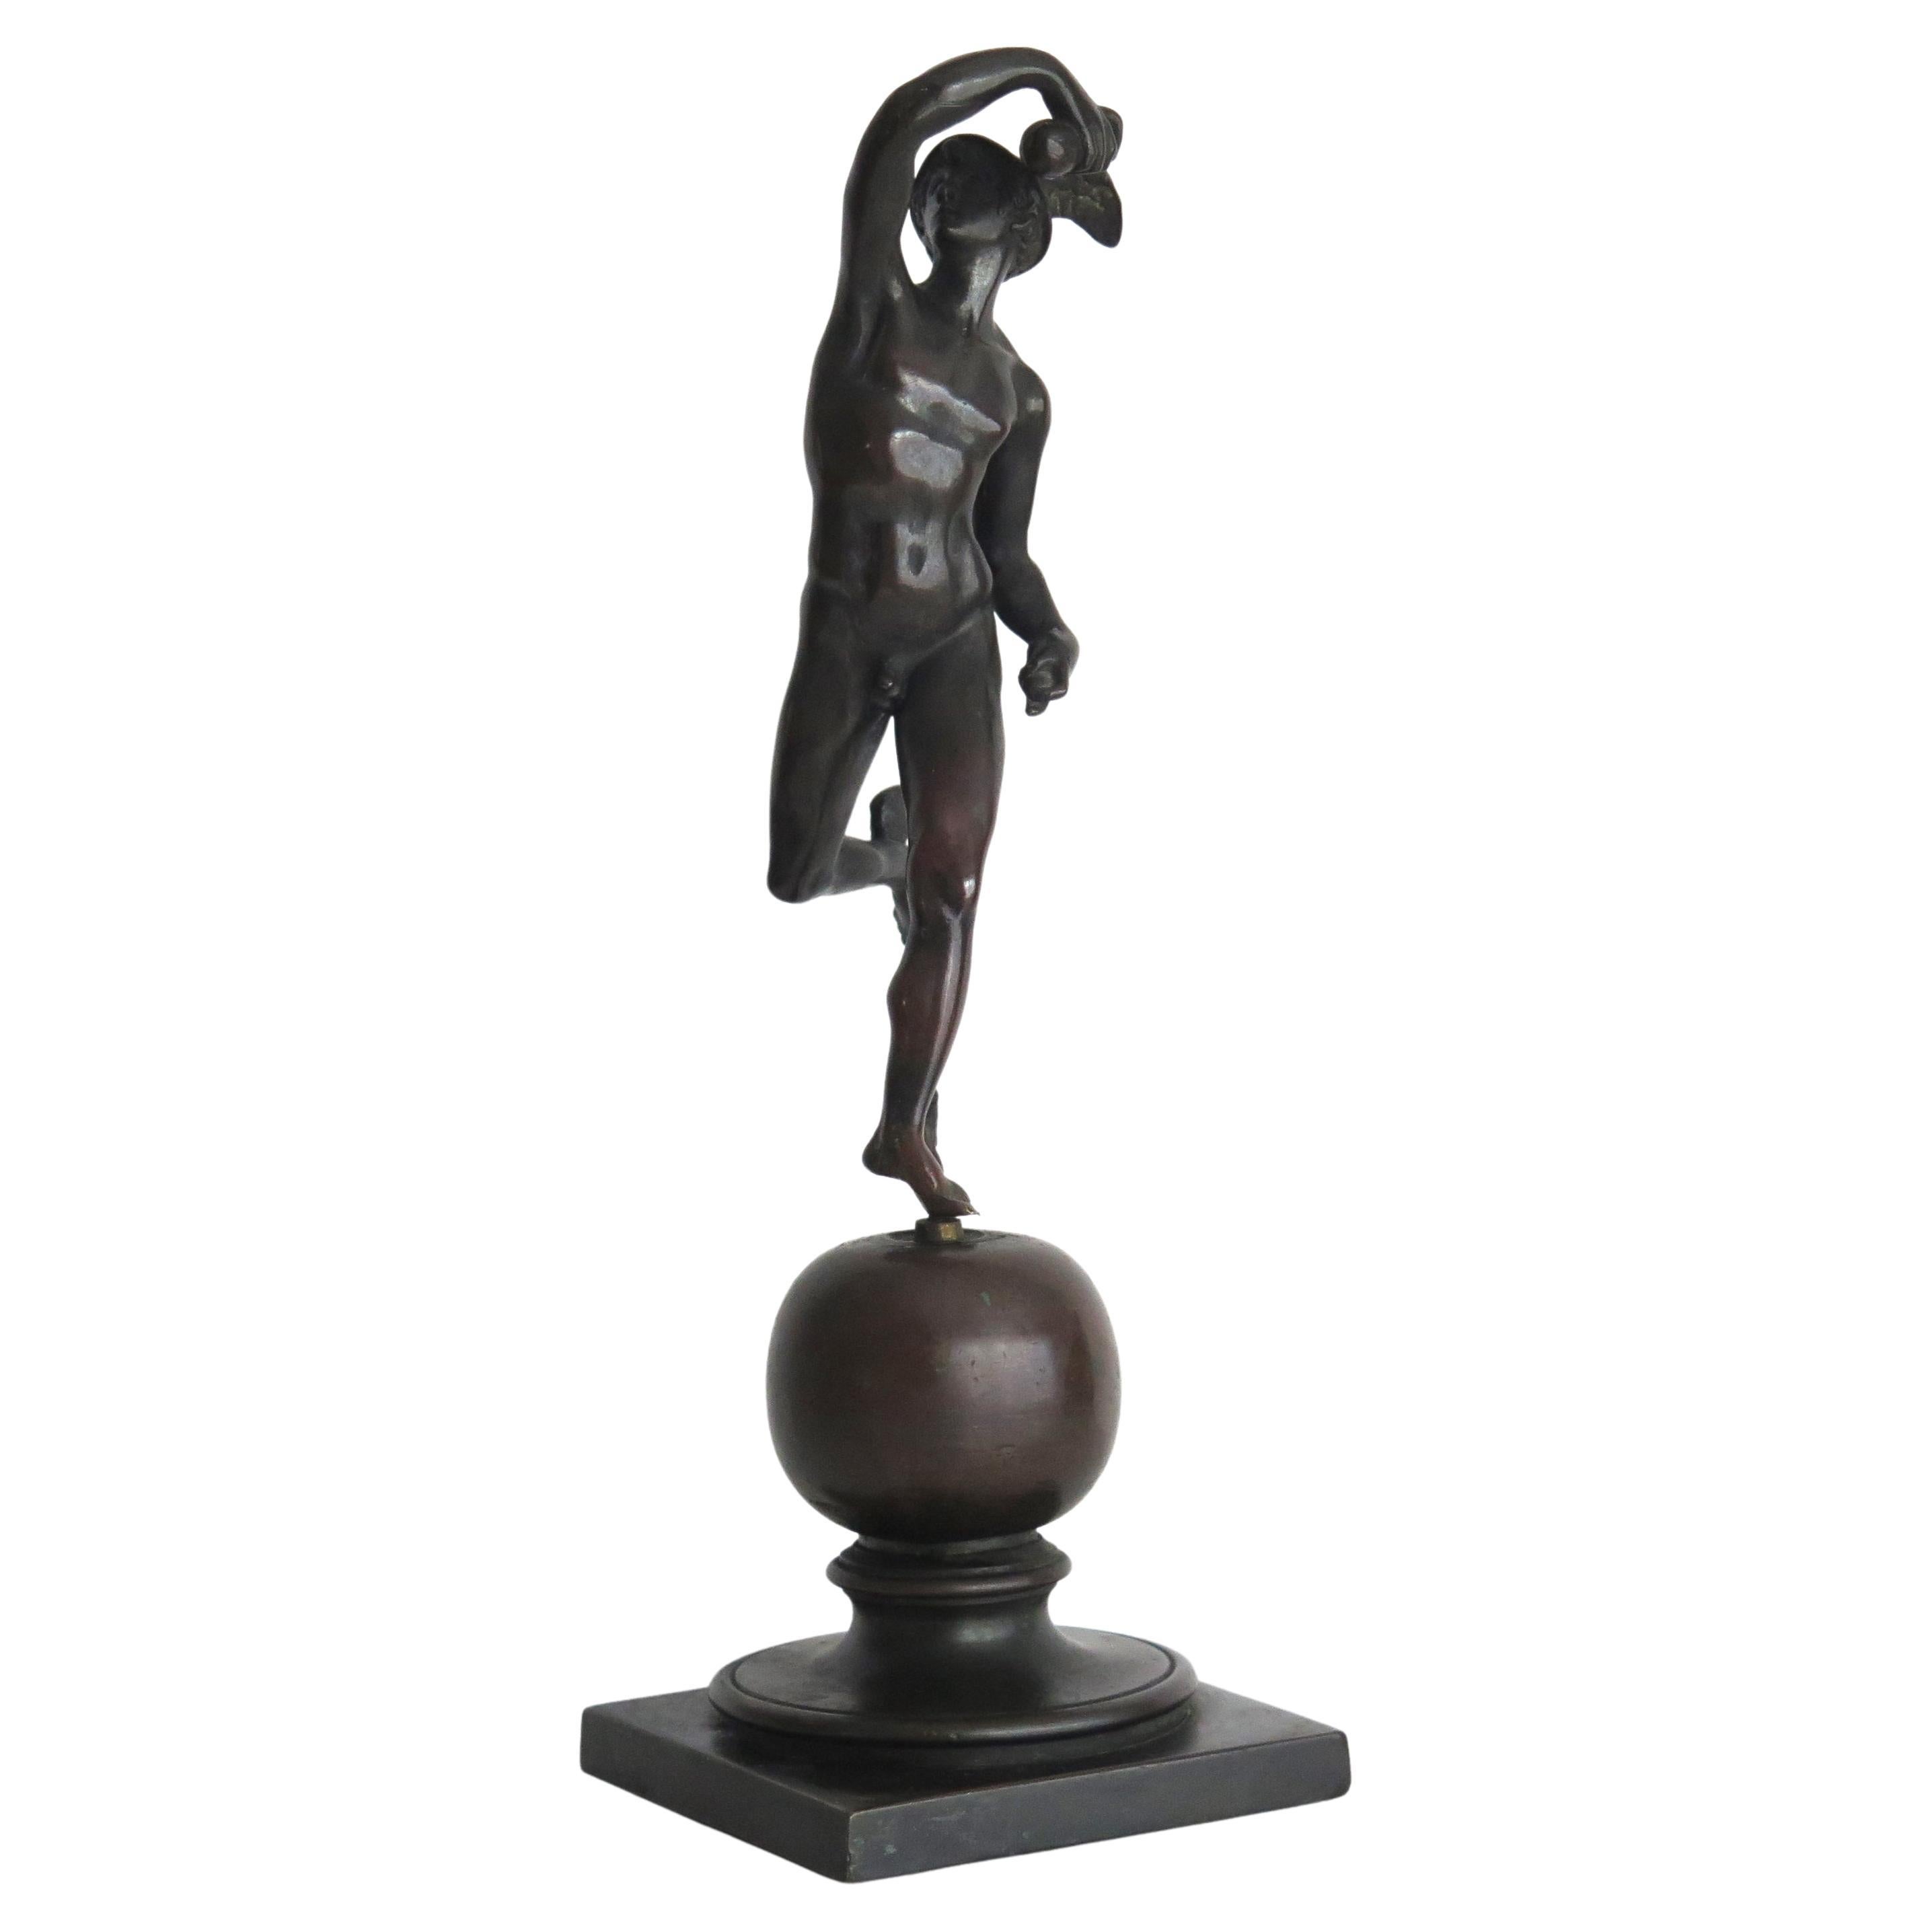 Bronzefigur des Hermes oder des Mercury aus dem 19. Jahrhundert, wahrscheinlich französisch